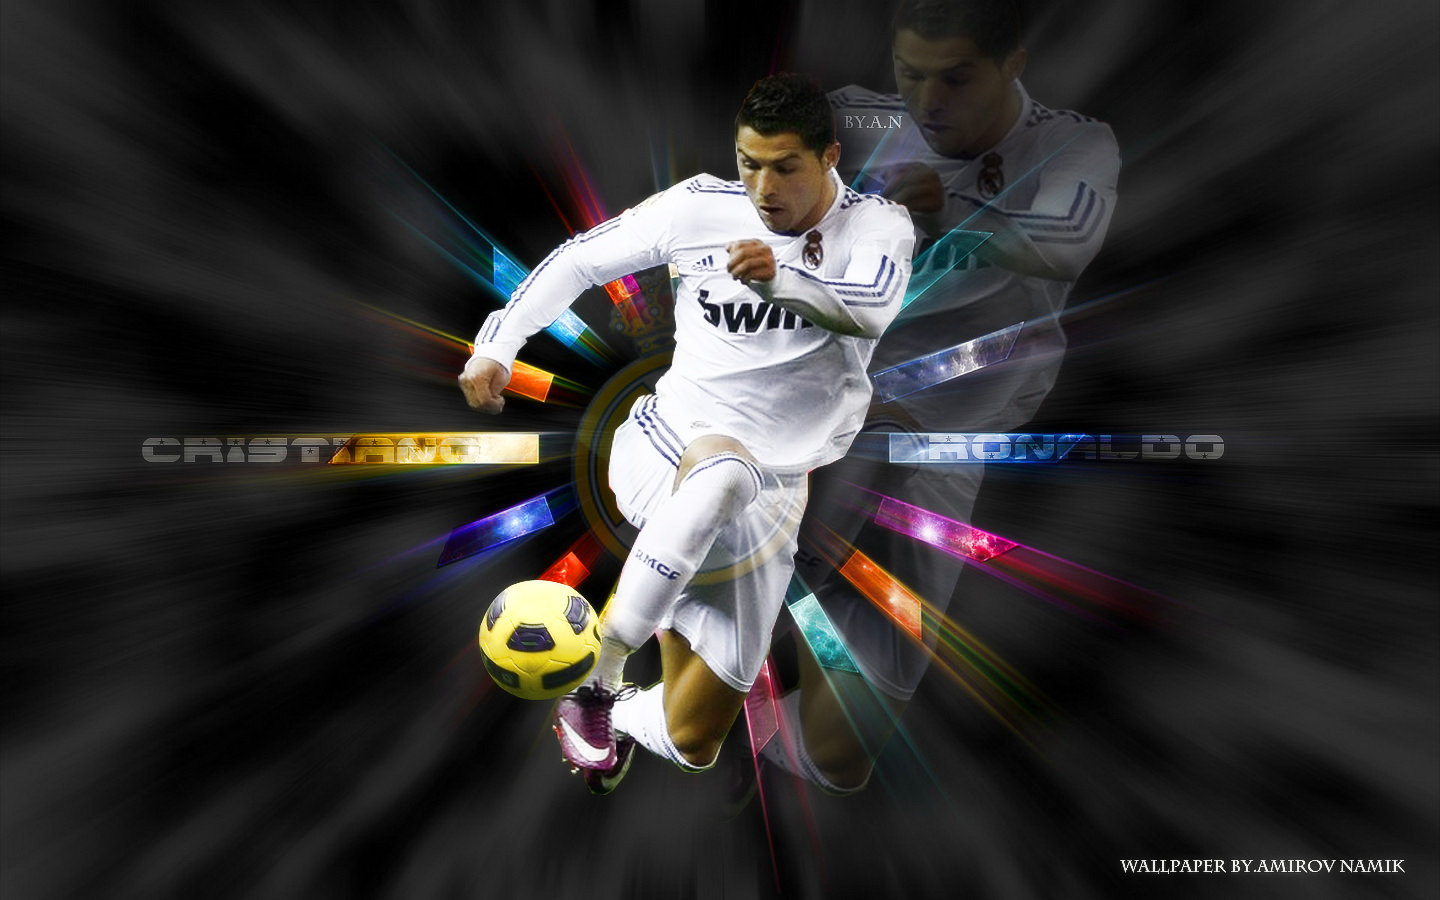 Cristiano ronaldo best skills goals many xxx pic